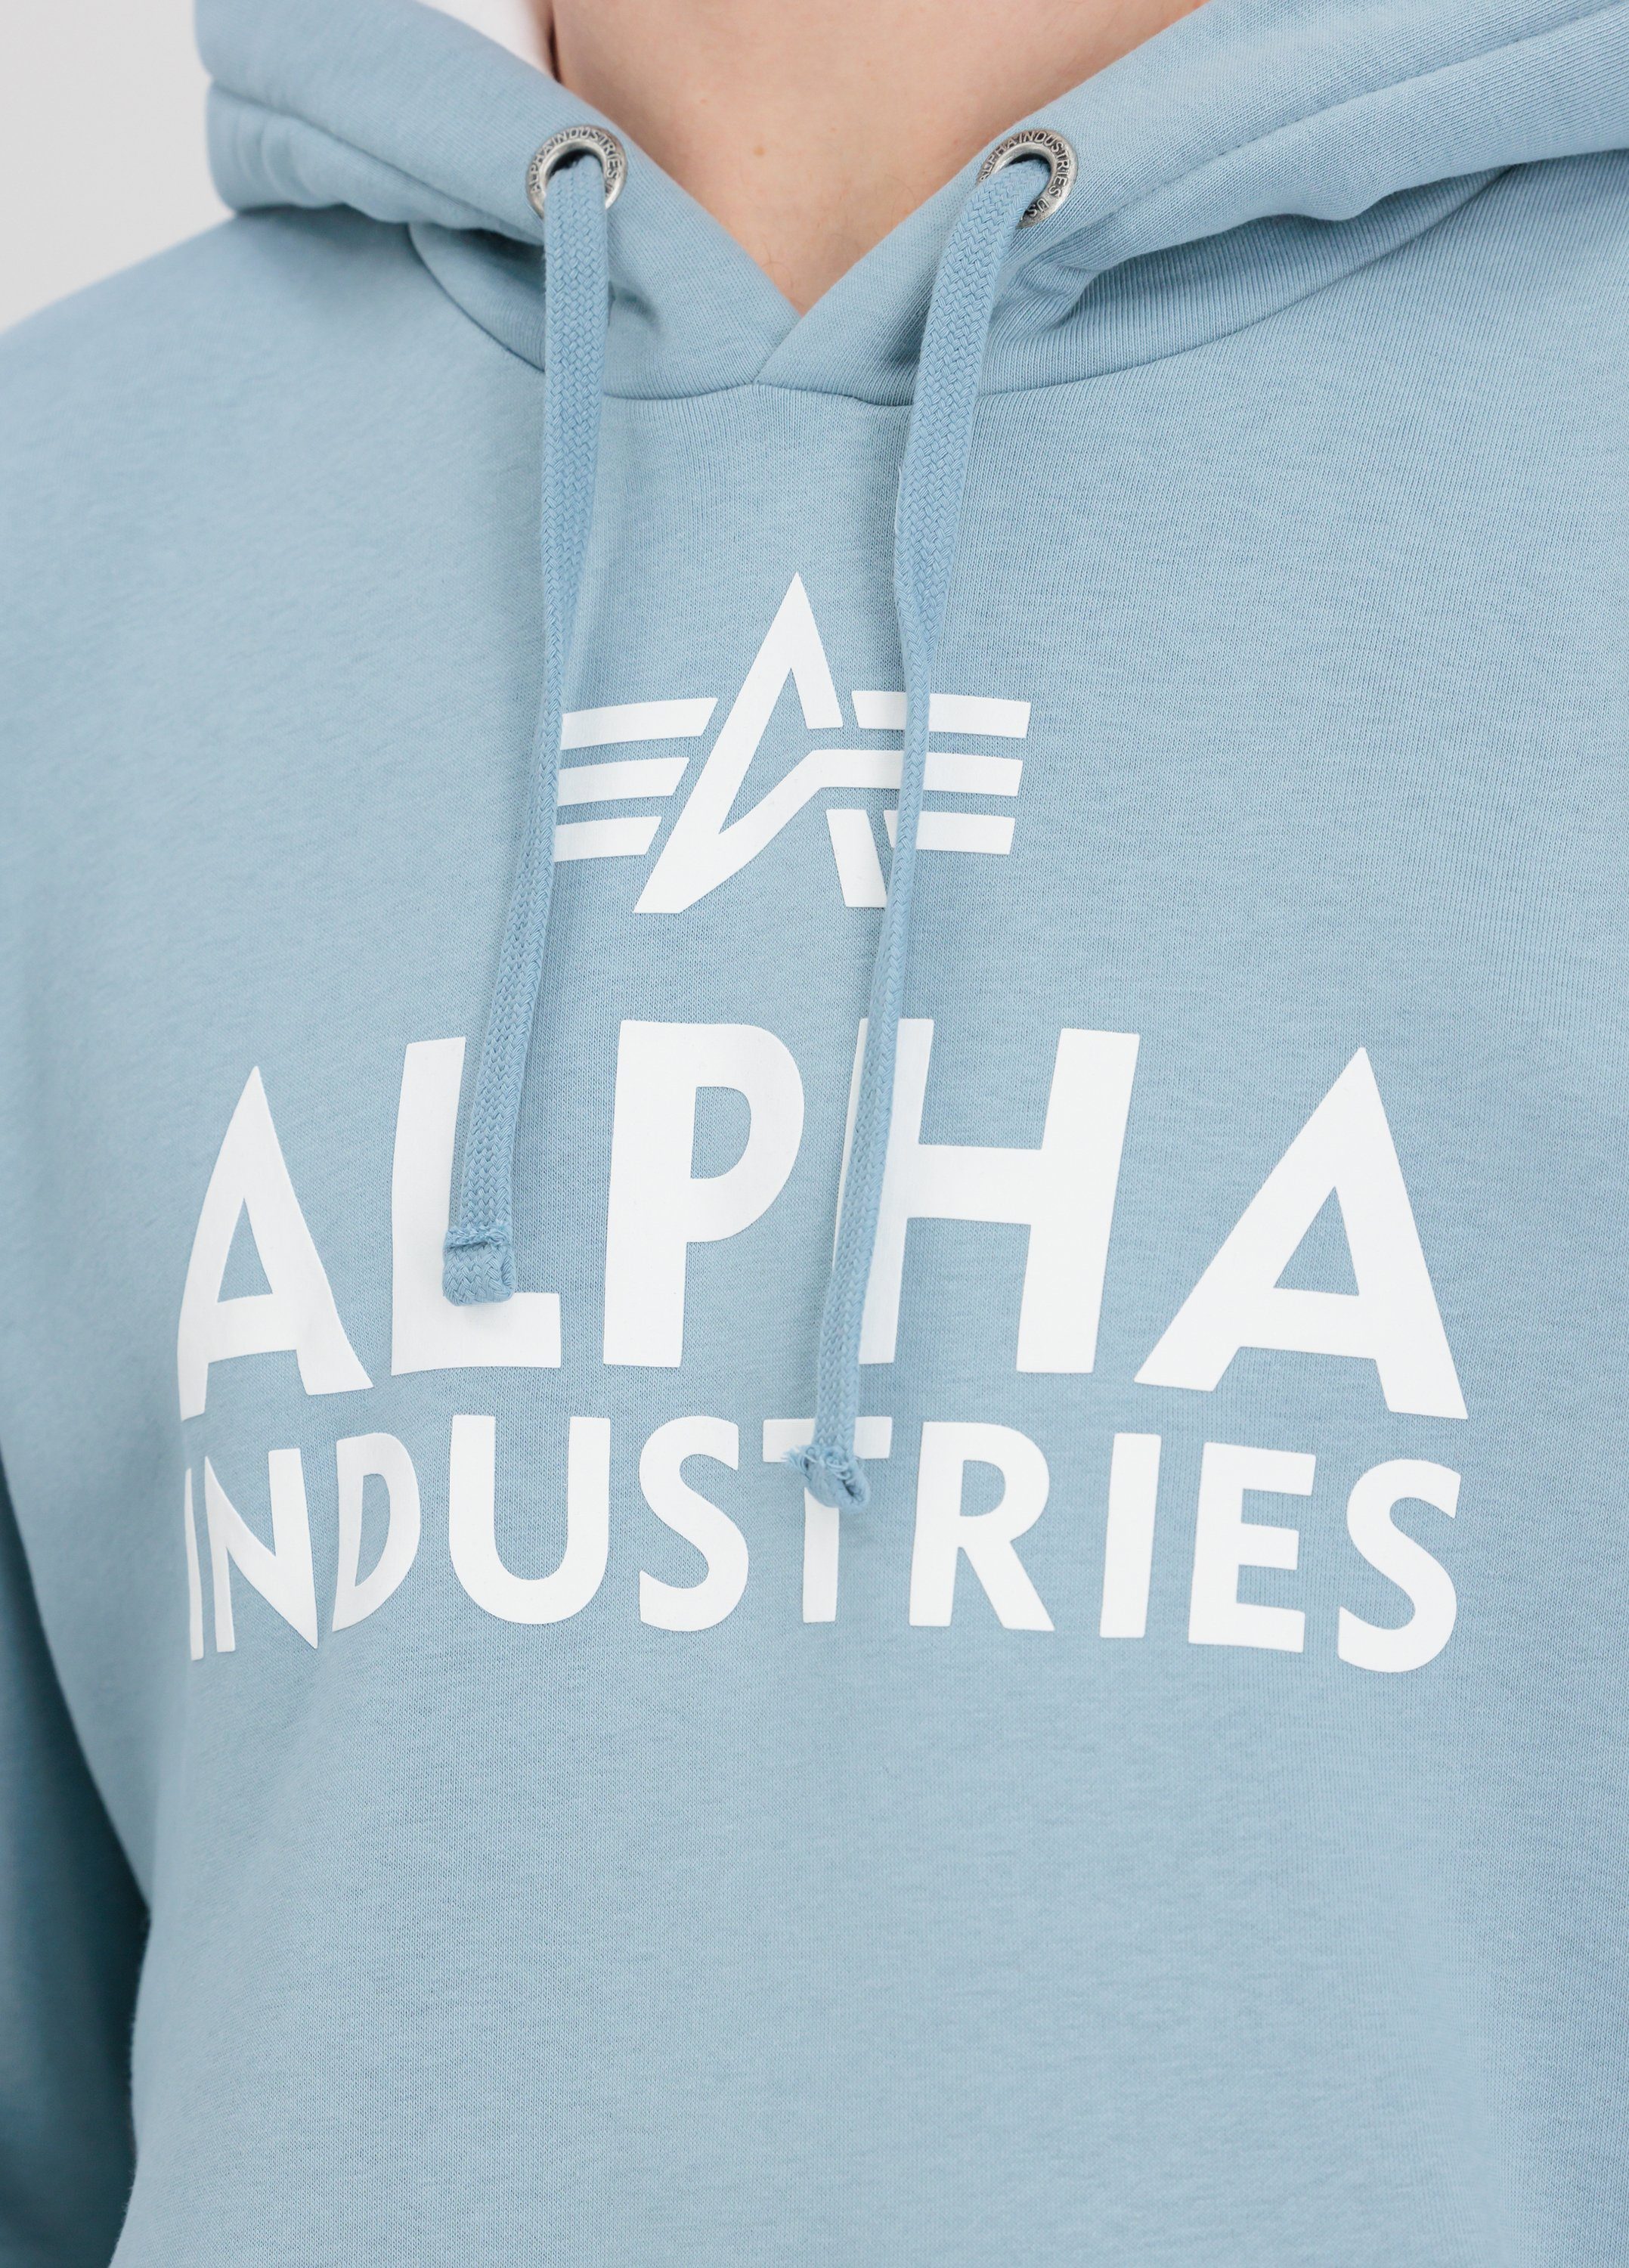 Alpha Industries Print - Men Hoodies Industries Foam Hoody Hoodie Alpha greyblue